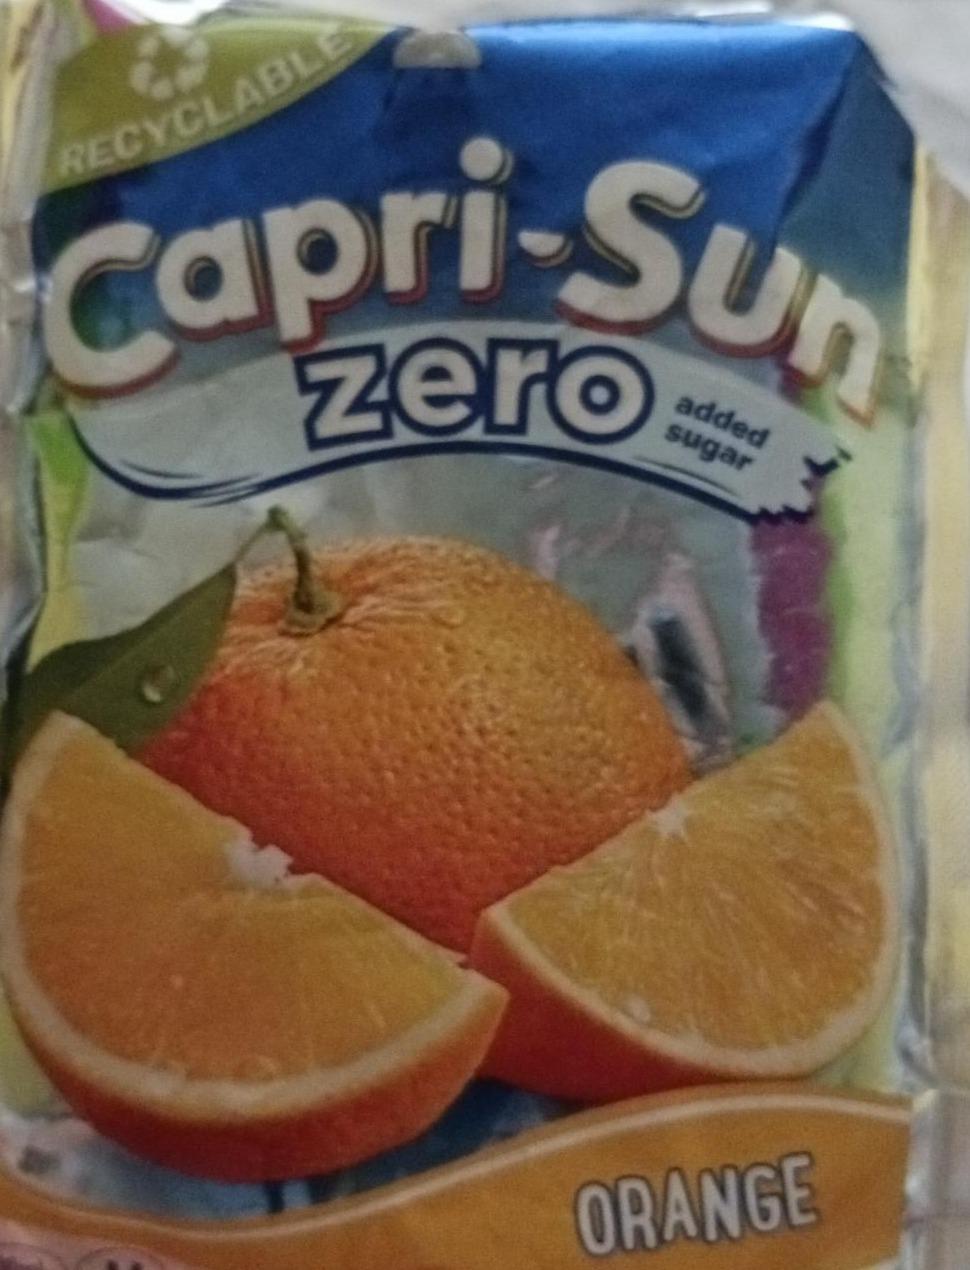 Fotografie - zero abdet sugar orange Capri-Sun